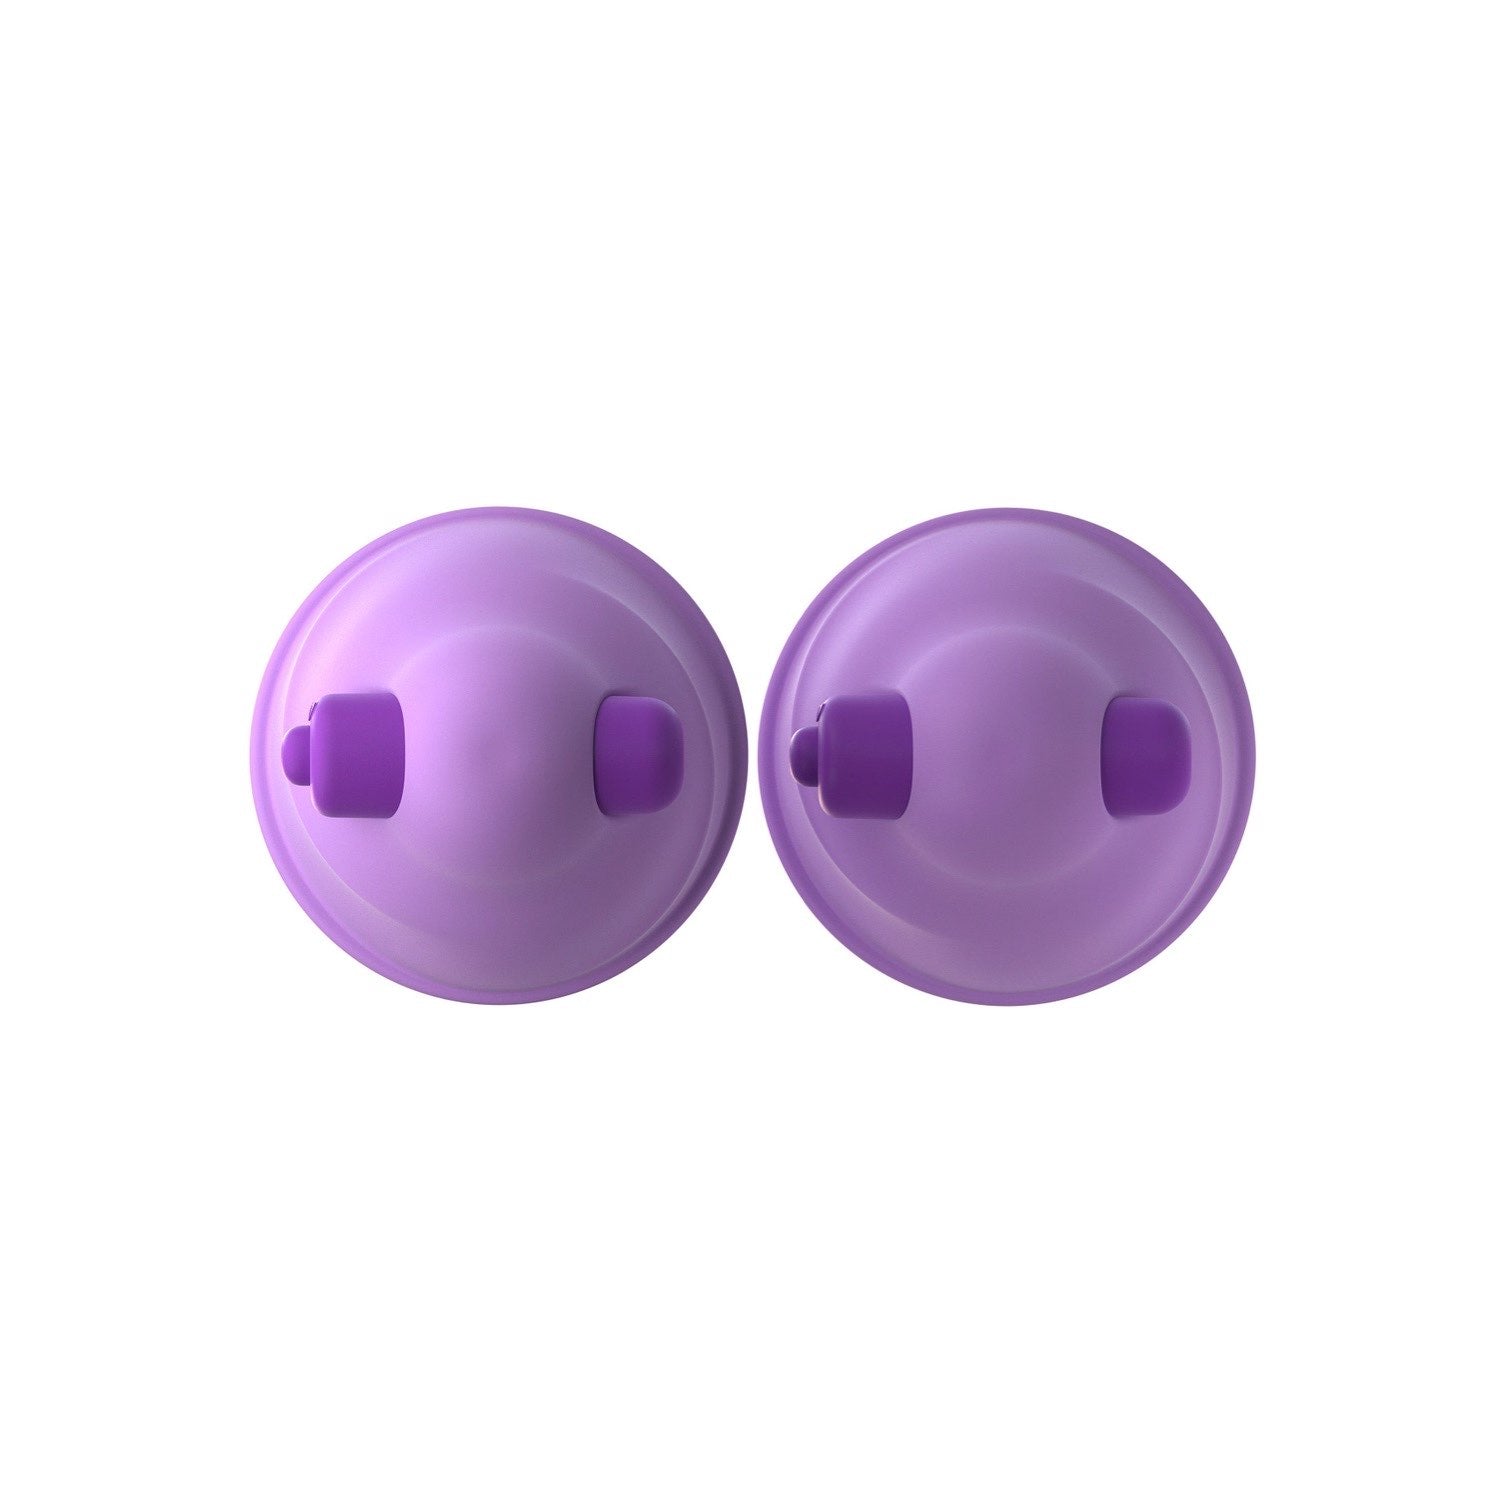 为她幻想 振动乳头吸盘 - 紫色 5 厘米振动乳头吸盘 - 2 件套 by Pipedream